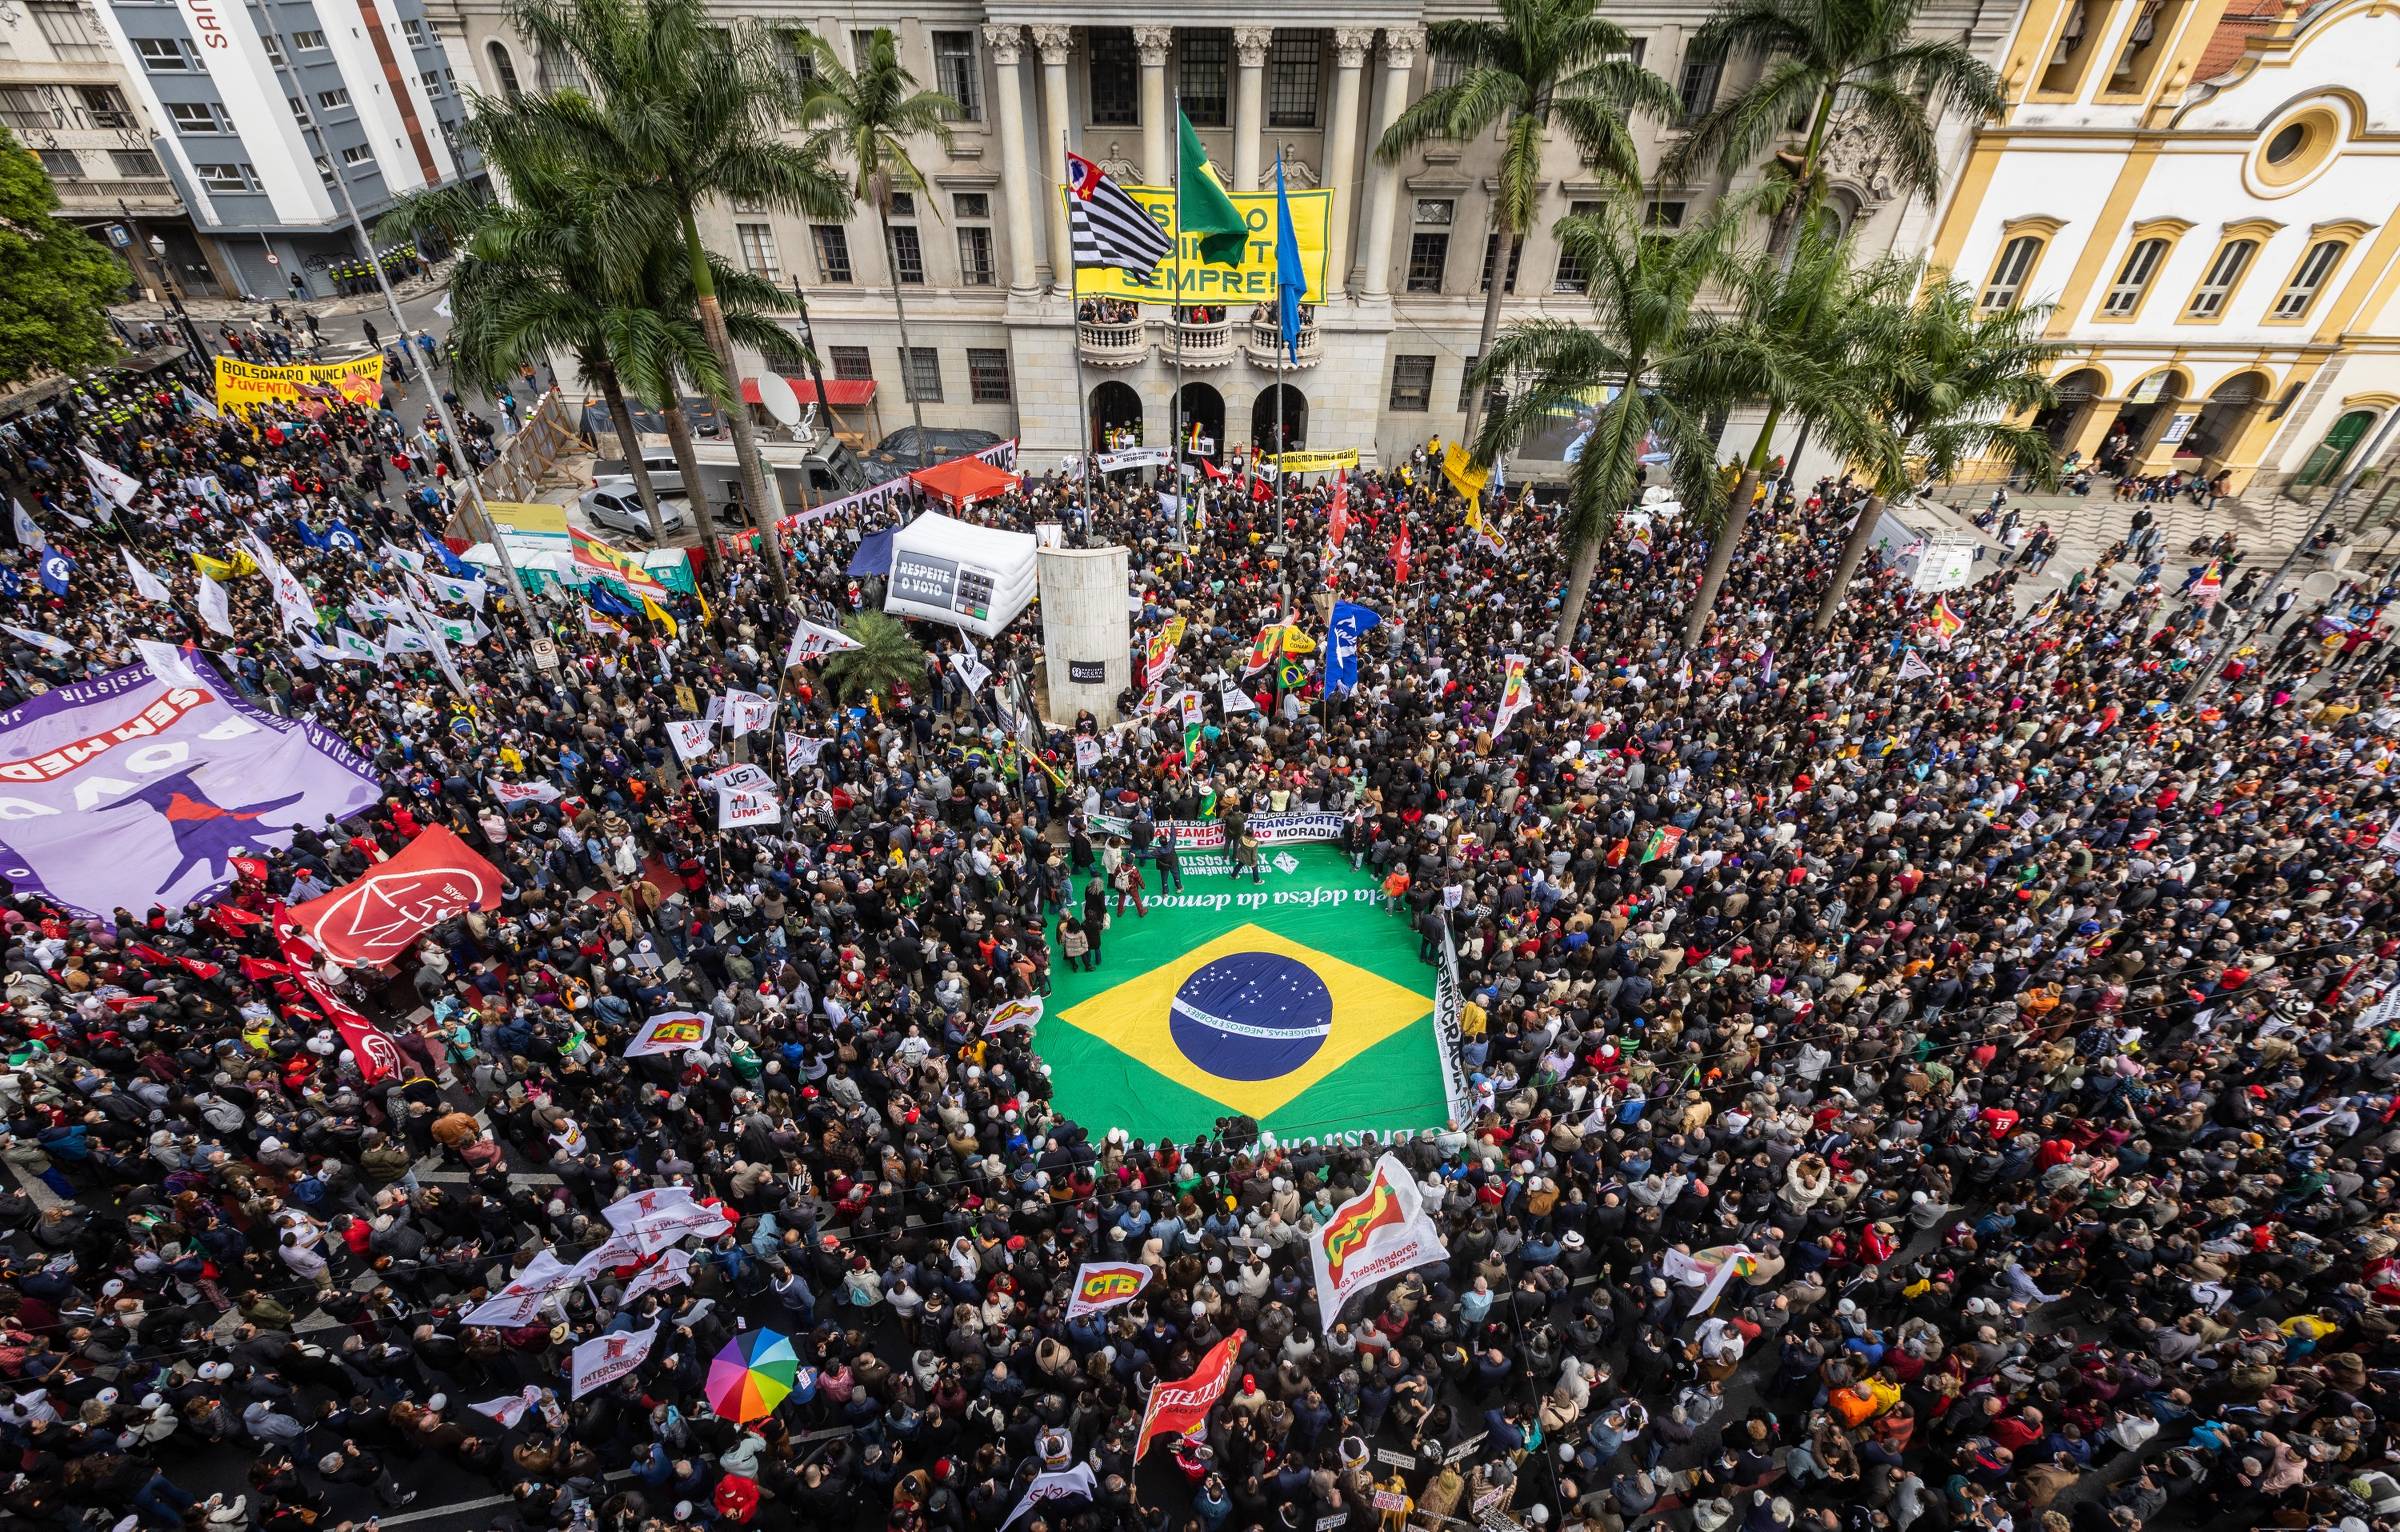 Movimentos populares convocam para ato em defesa da democracia no dia 23 de março